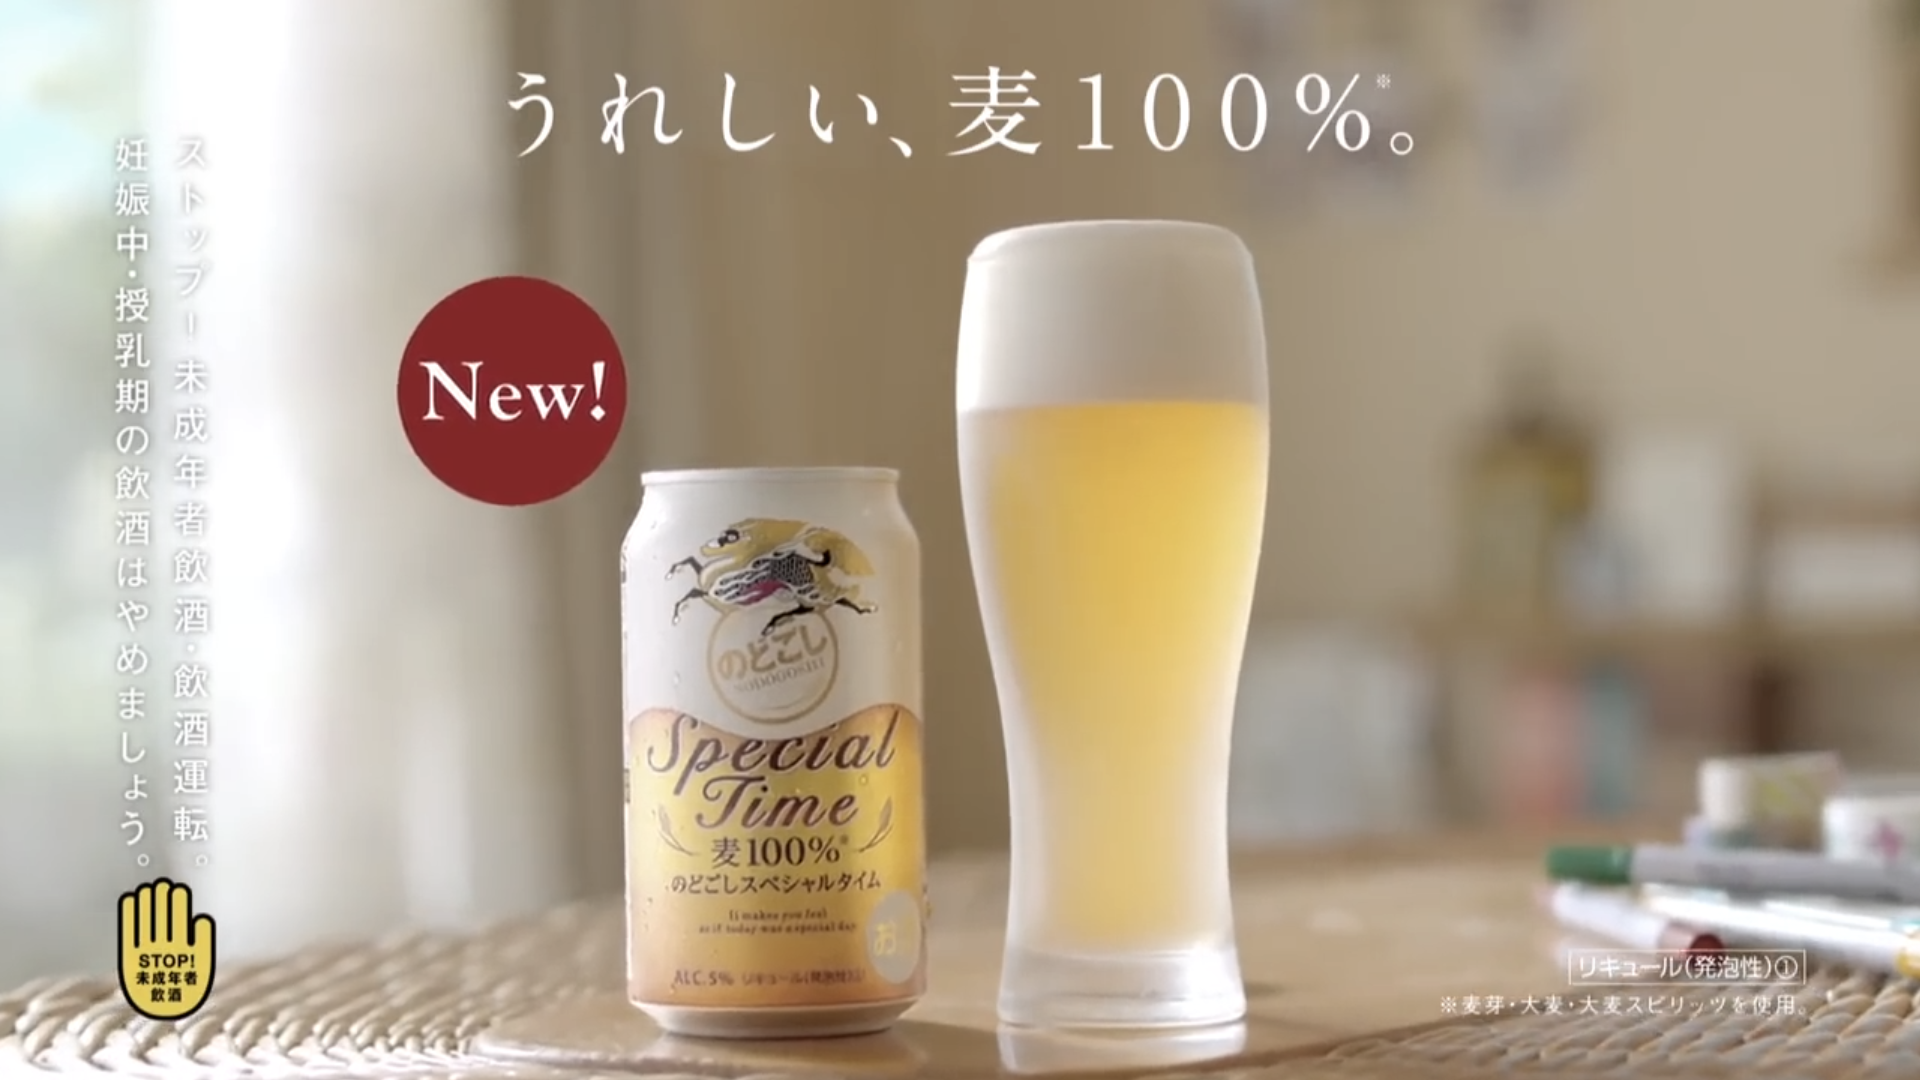 日本波瑠在家中哼著歌扭著腰地拿啤酒广告